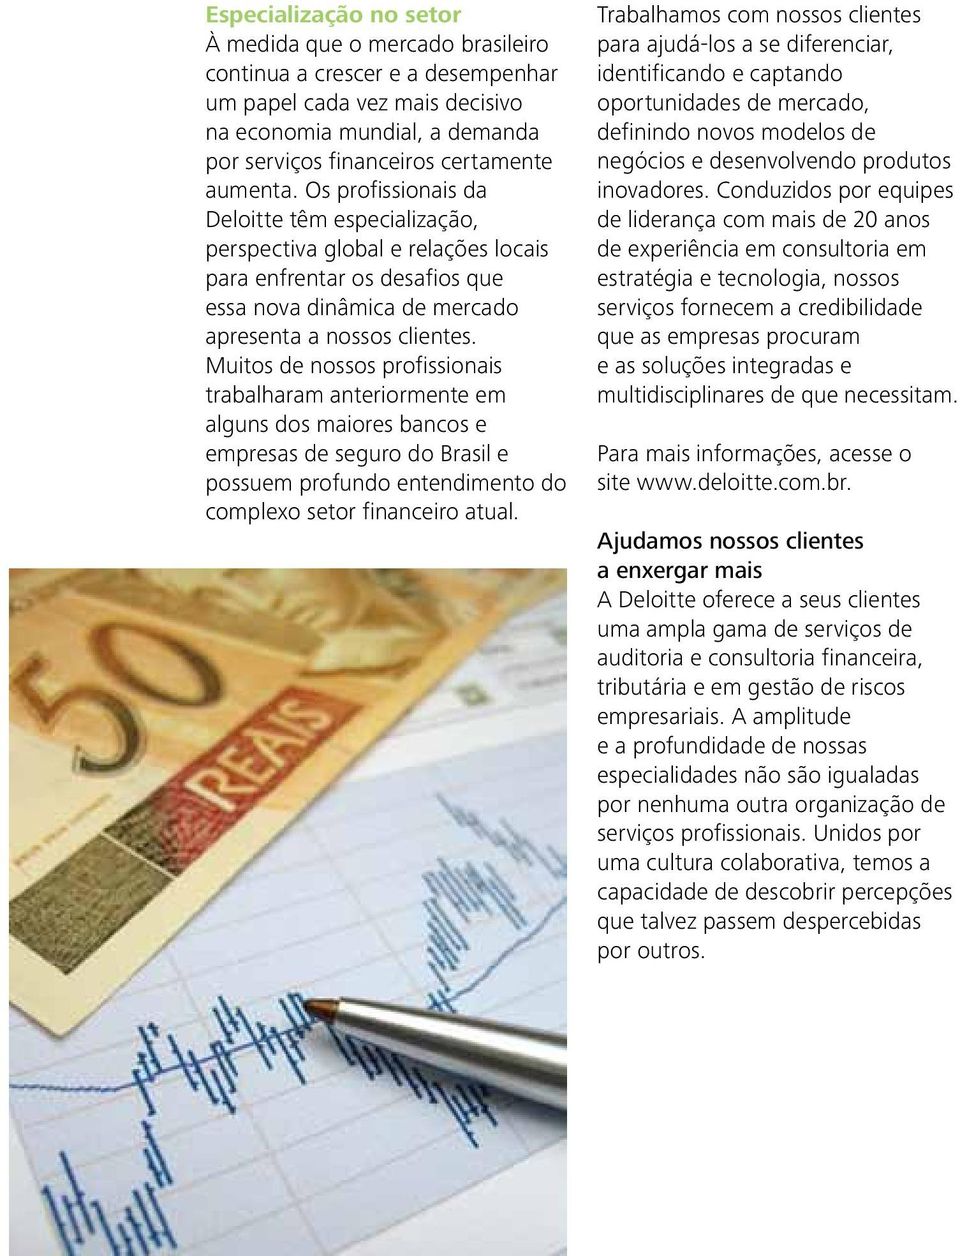 Muitos de nossos profissionais trabalharam anteriormente em alguns dos maiores bancos e empresas de seguro do Brasil e possuem profundo entendimento do complexo setor financeiro atual.